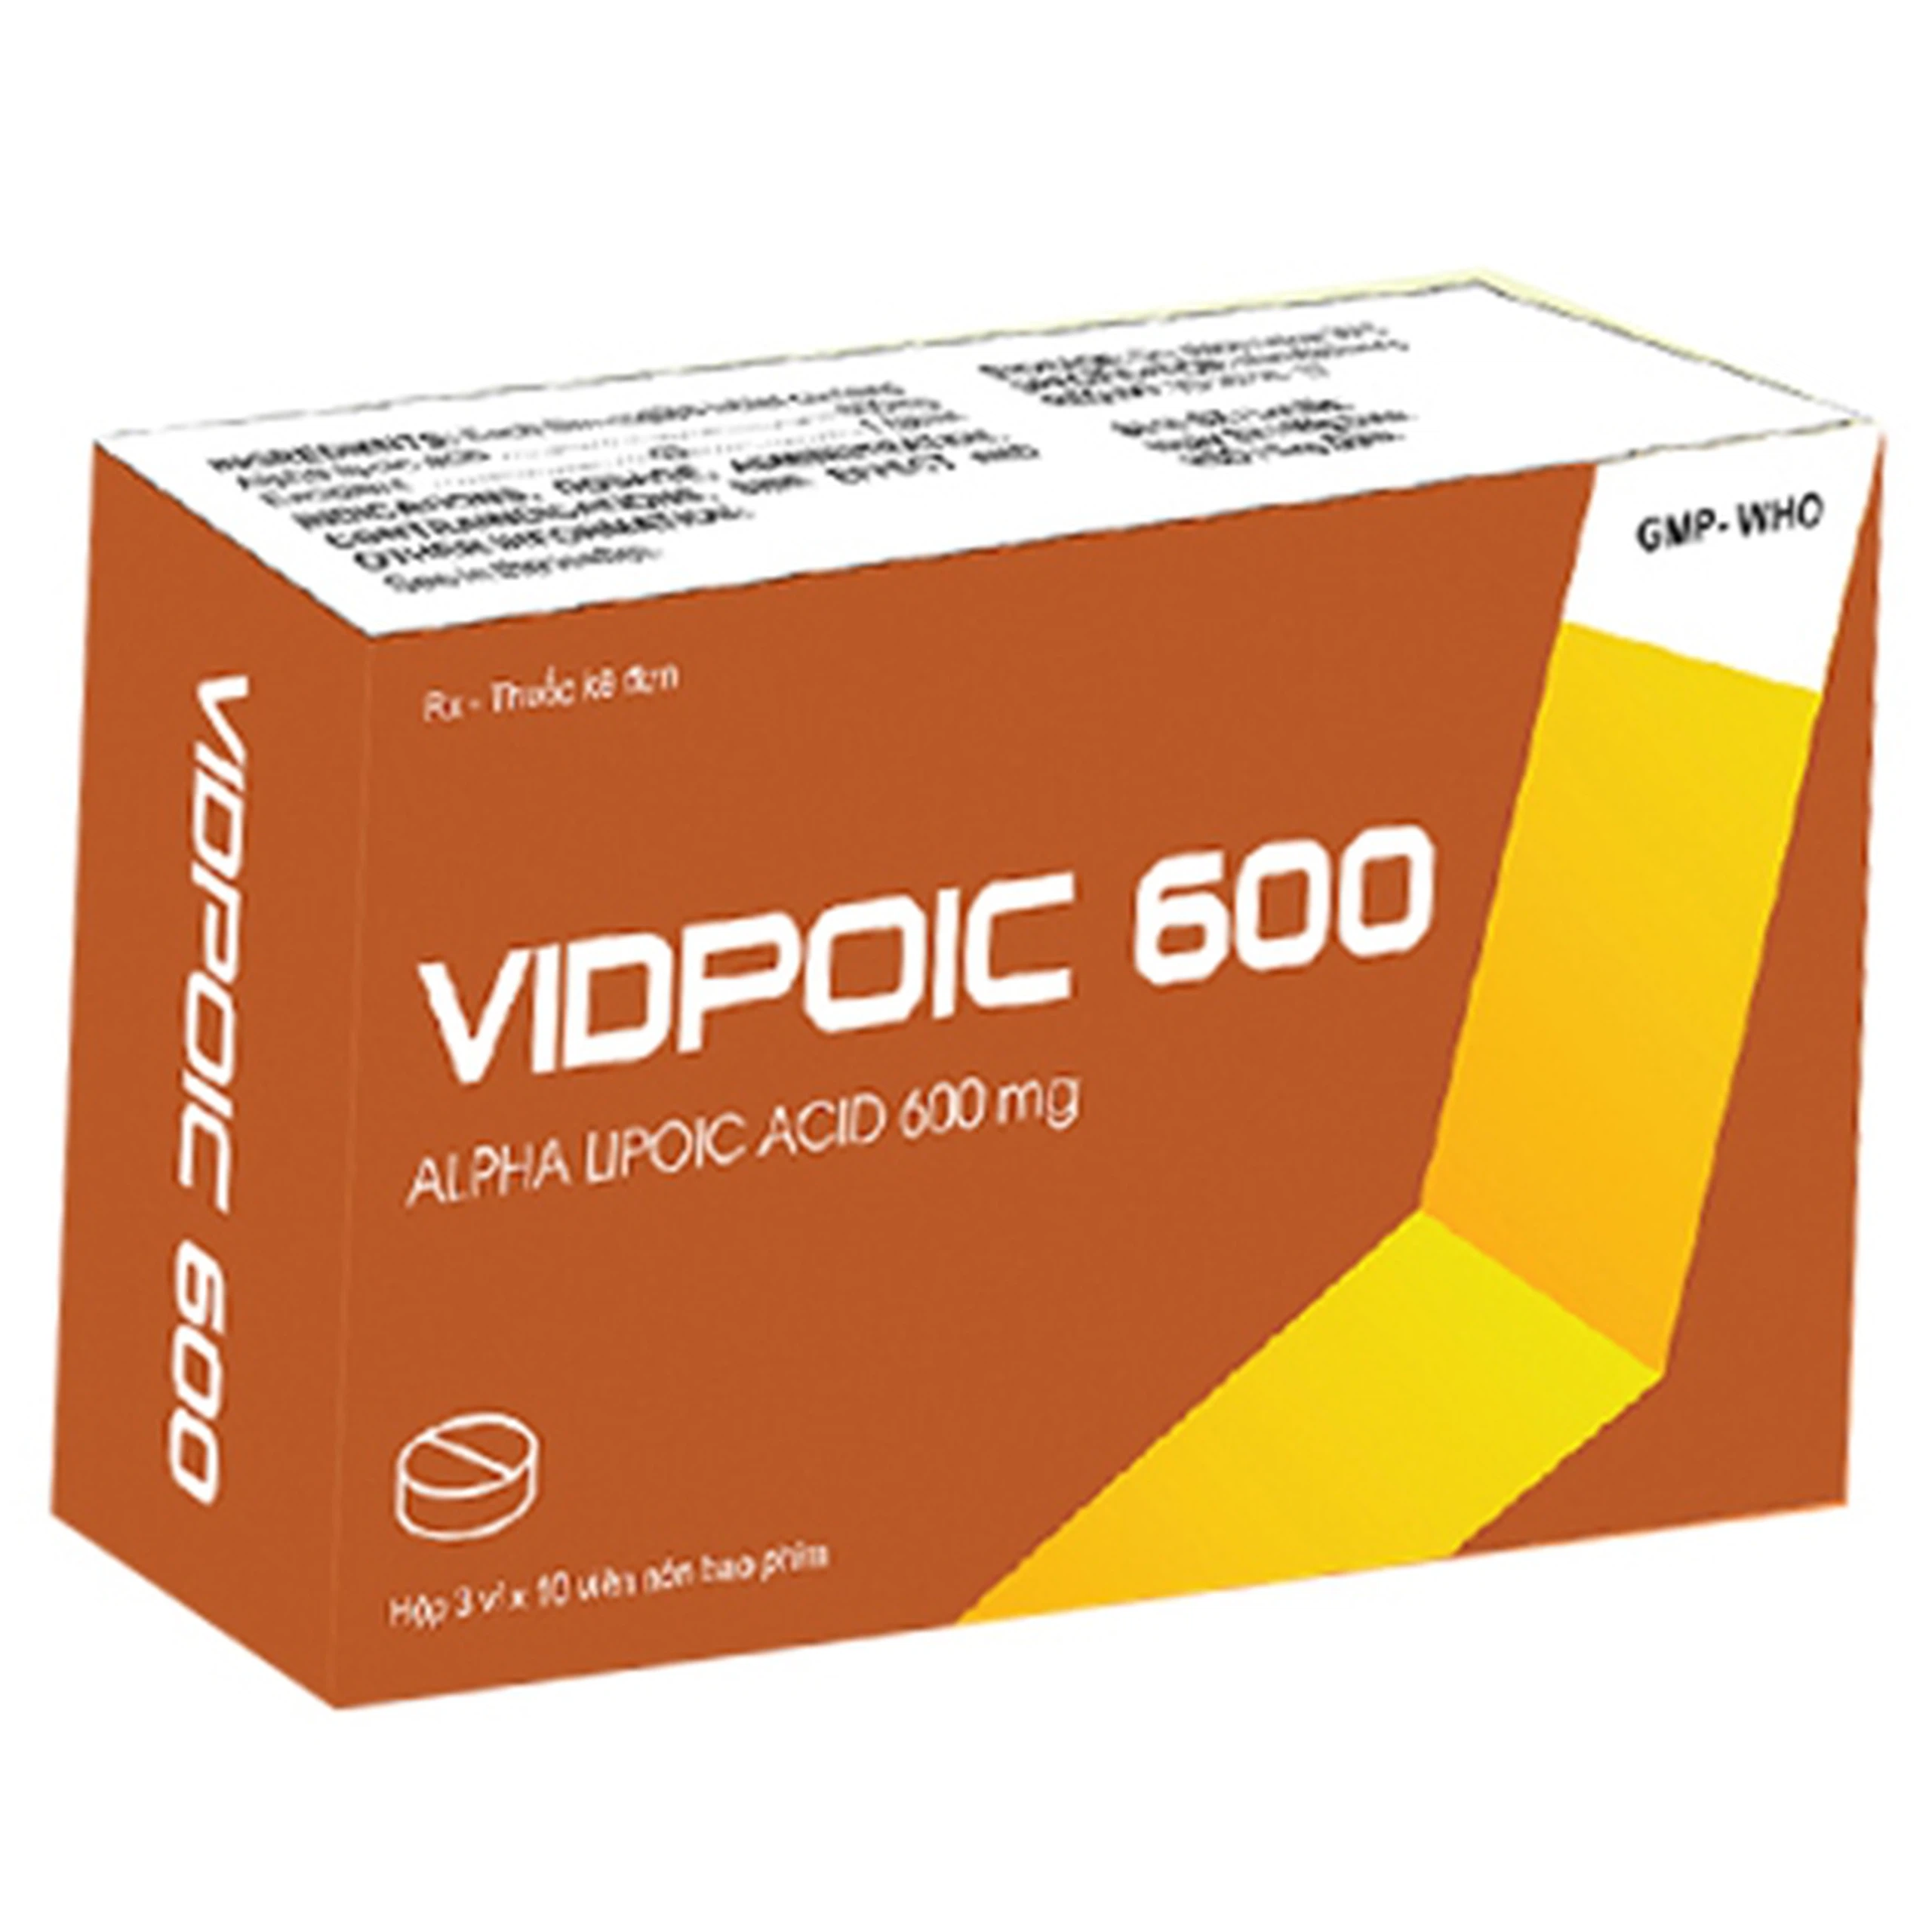 Thuốc Vidpoic 600 điều trị rối loạn cảm giác do bệnh viêm đa dây thần kinh đái tháo đường (3 vỉ x 10 viên)